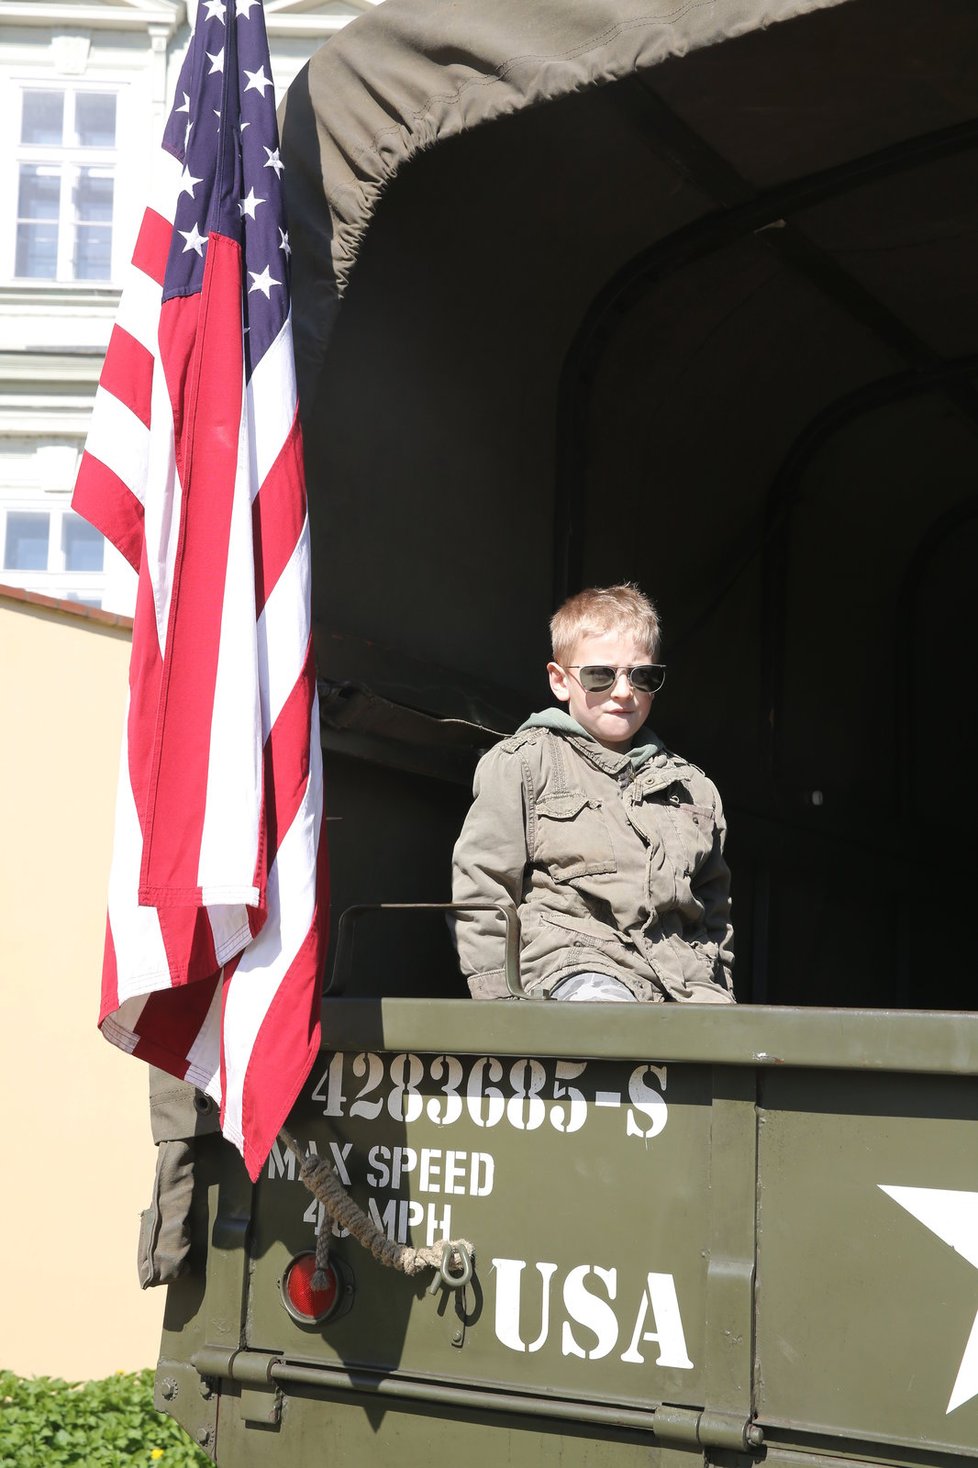 Konvoj s desítkami historických vozidel americké armády dnes v Praze připomněl osvobození Československa na konci druhé světové války.